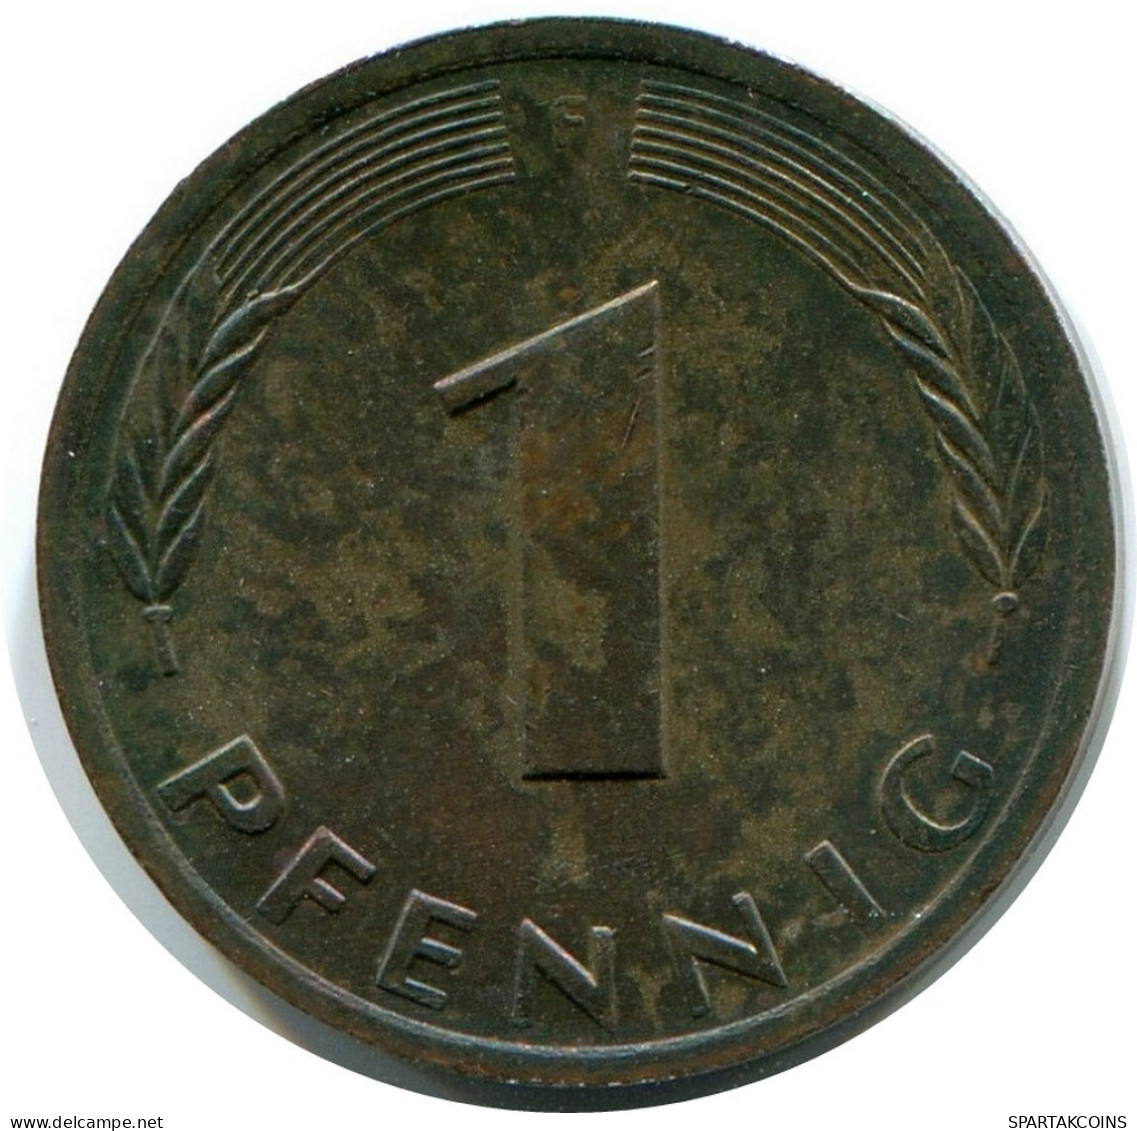 1 PFENNIG 1978 F BRD ALEMANIA Moneda GERMANY #AW934.E.A - 1 Pfennig